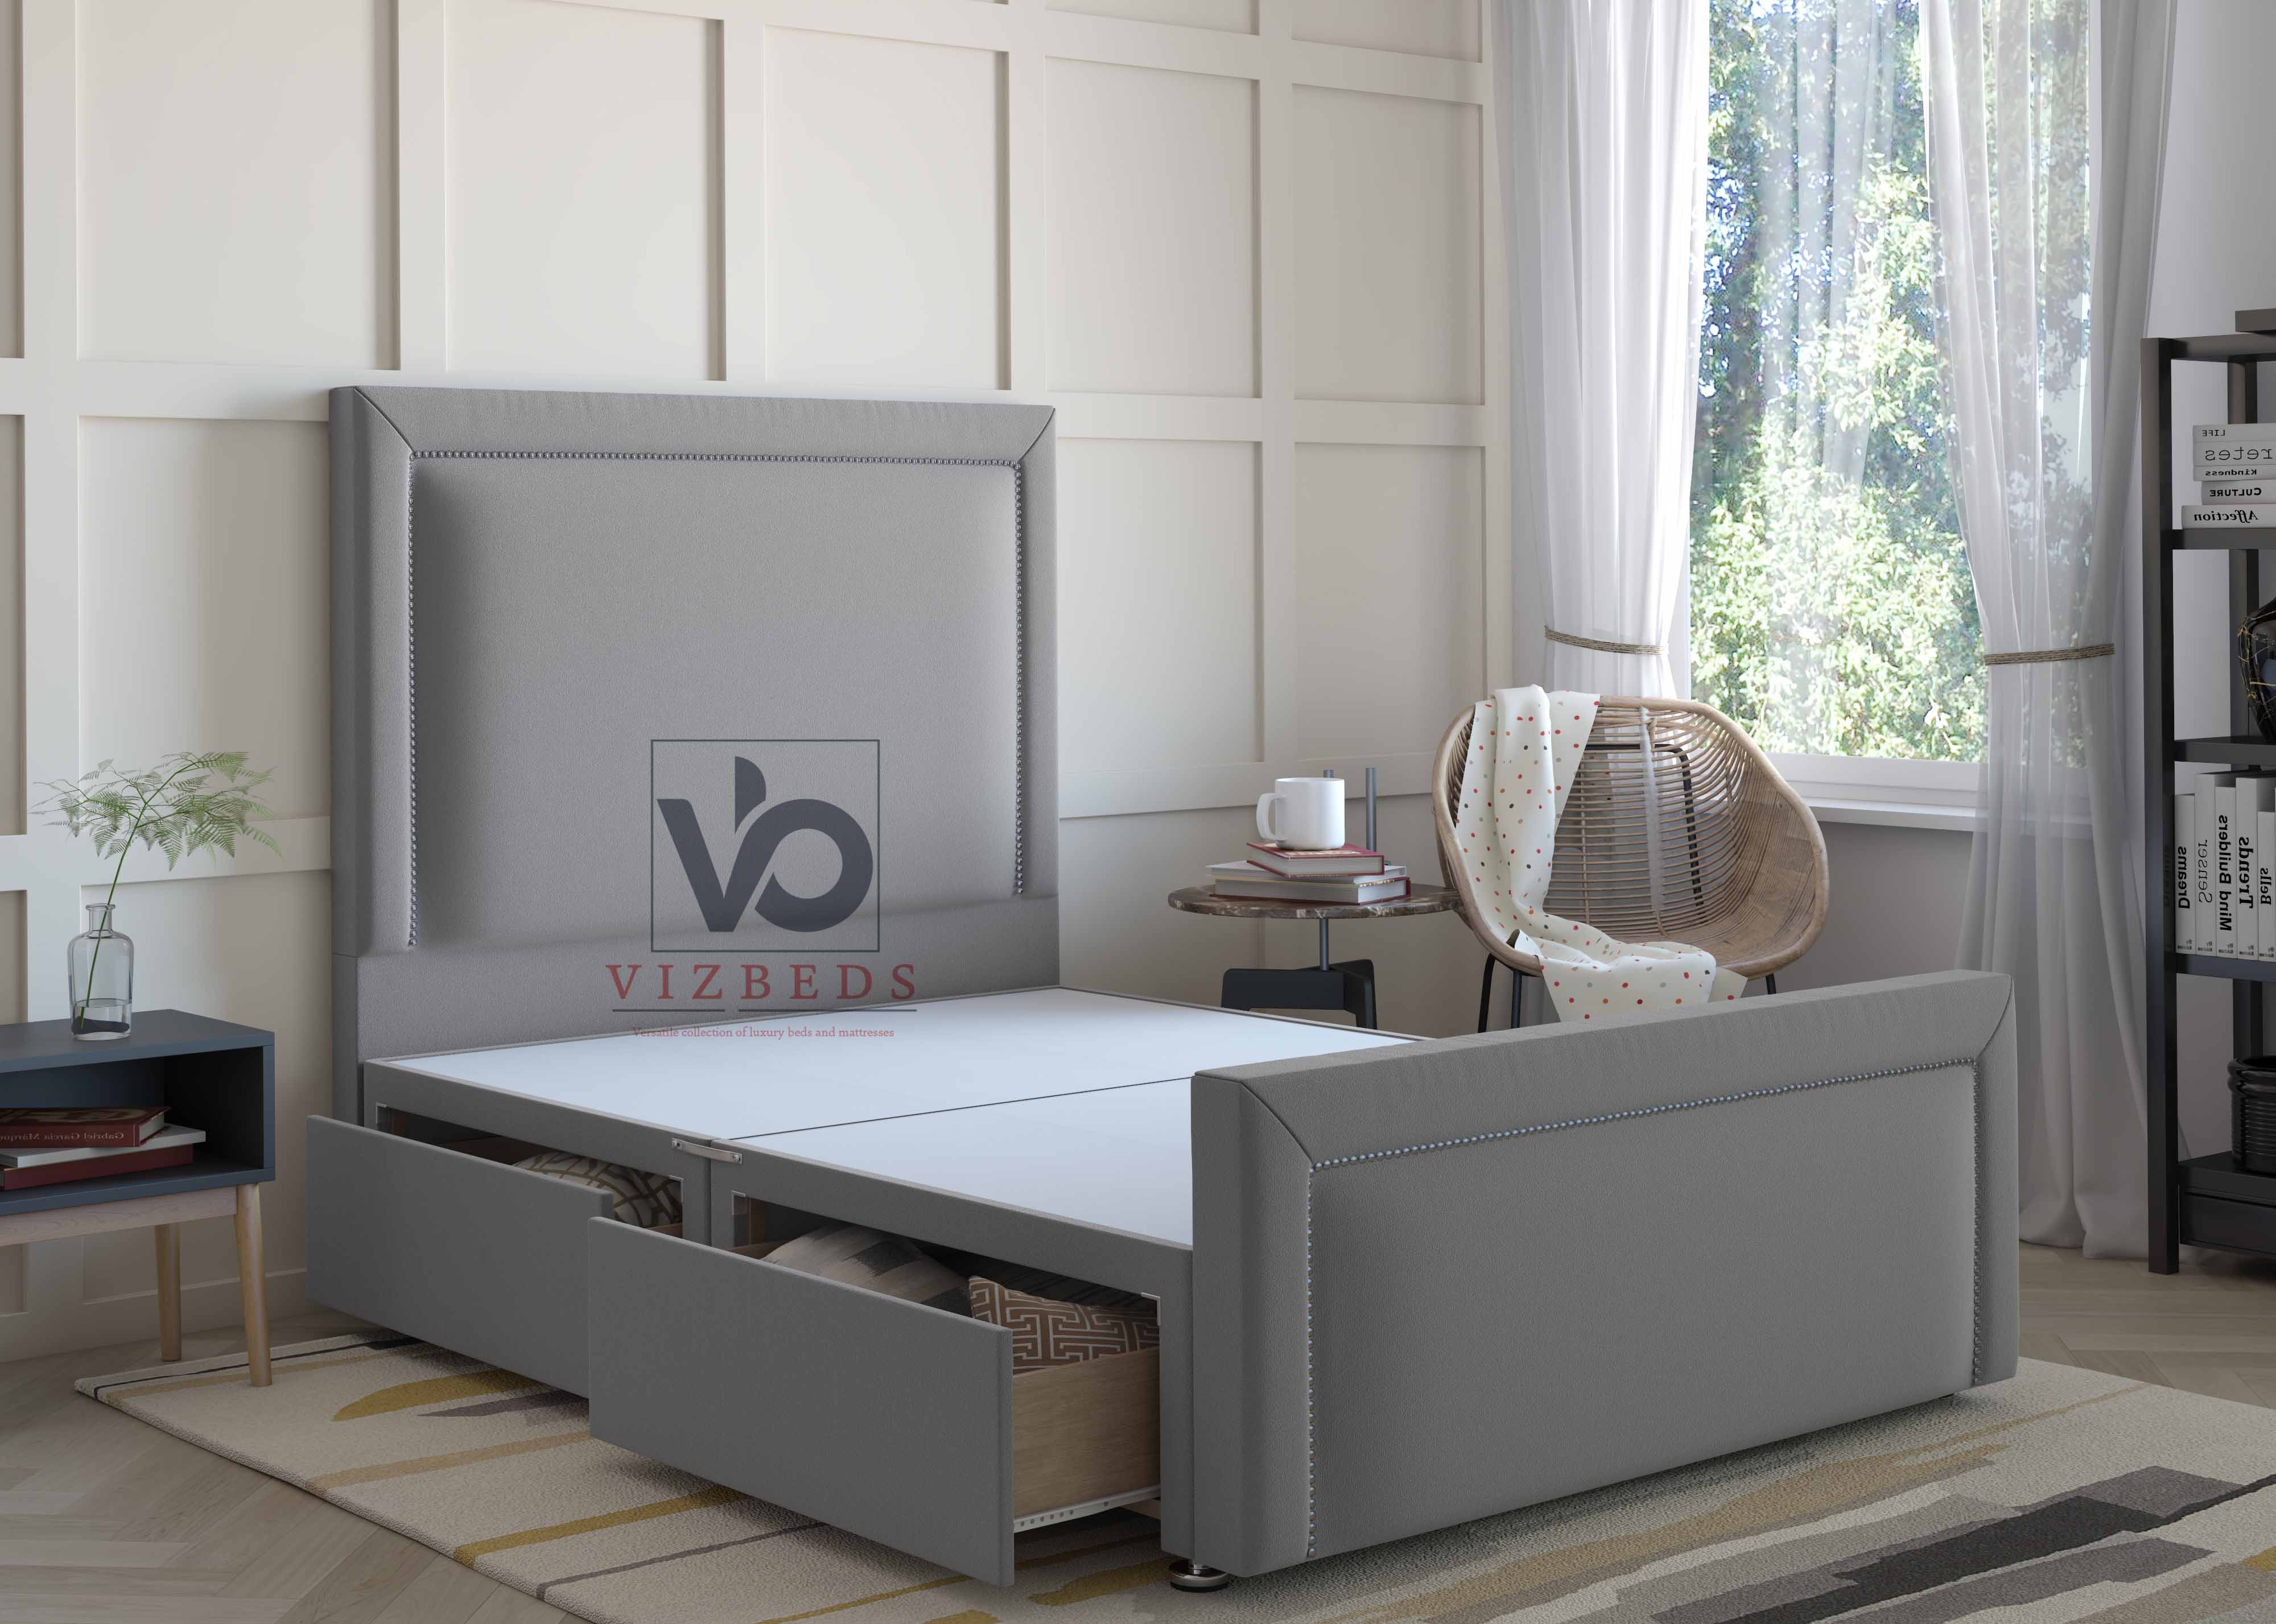 Luxury Queens Divan Bed Set With Luxury Headboard